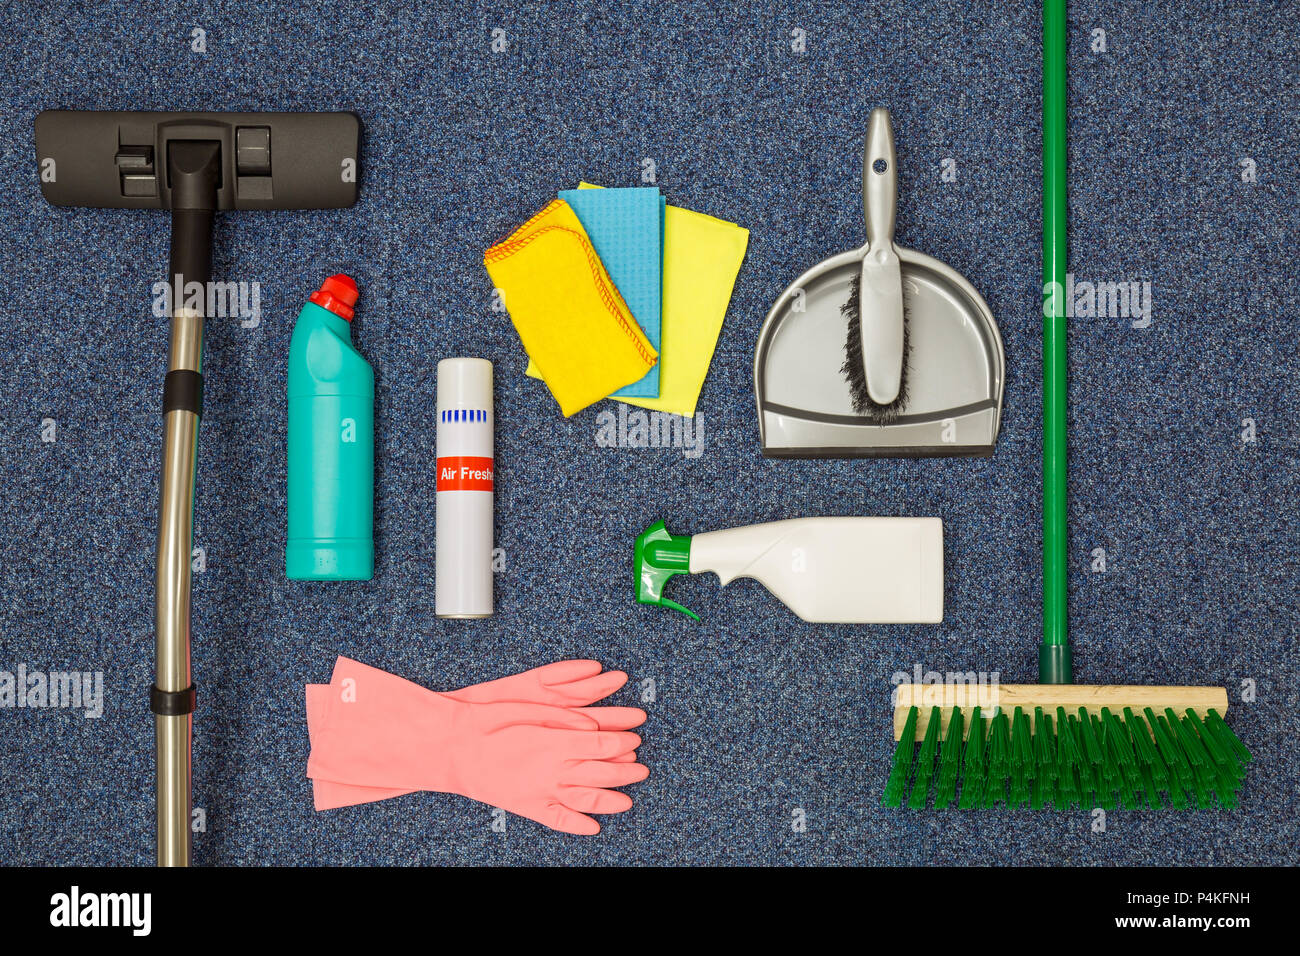 Ein flach Anordnung von Reinigungsgeräten auf einem blauen Büro carpat Hintergrund. Stockfoto